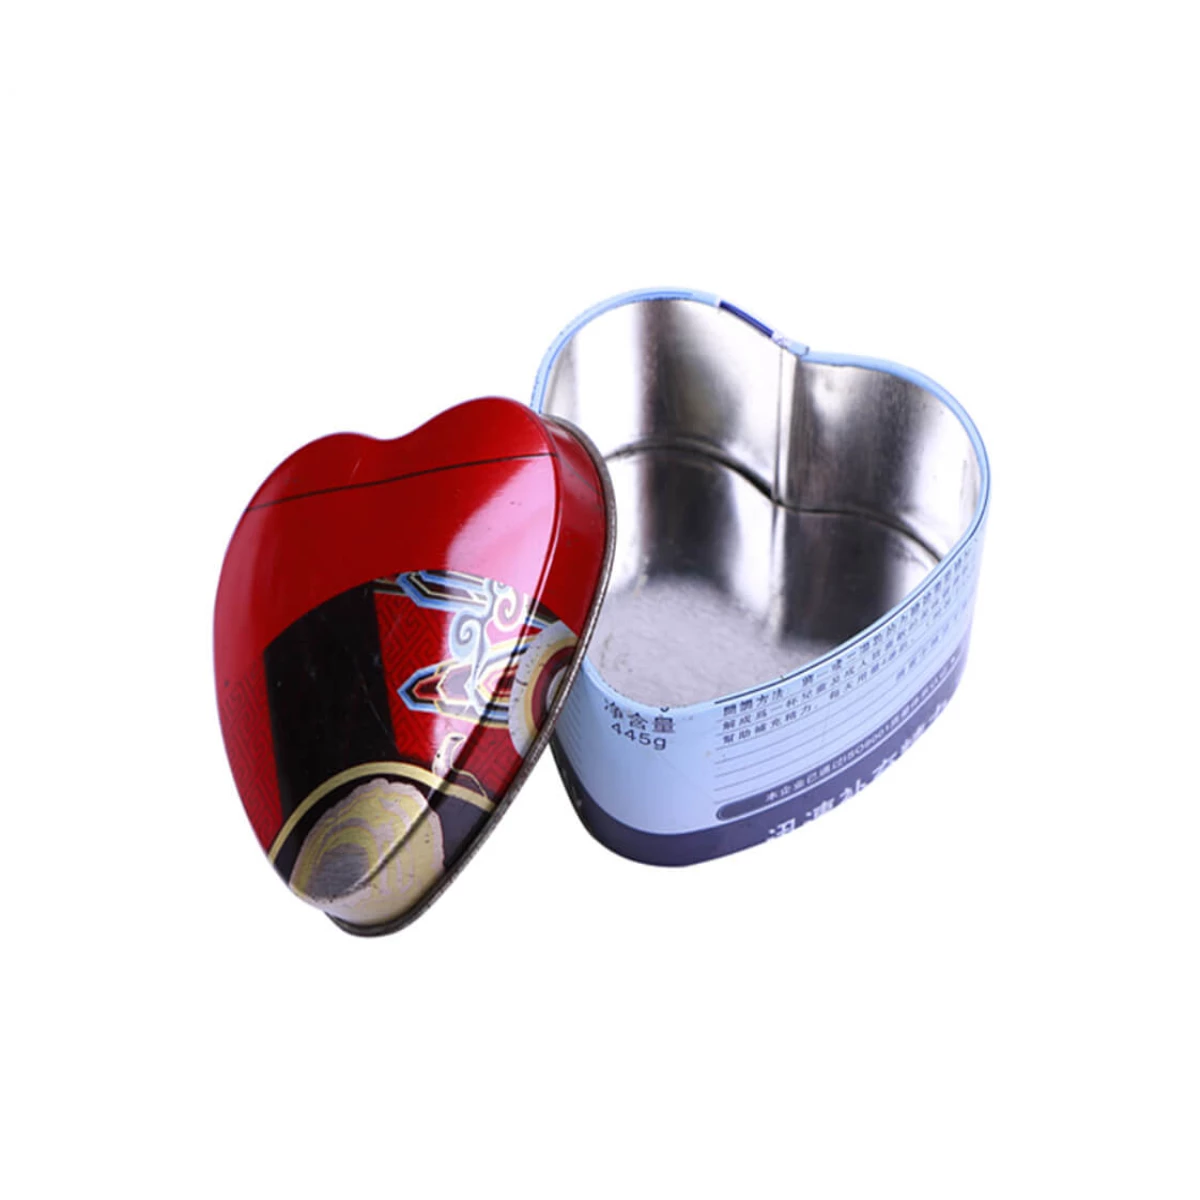 China heart shaped iron box Manufacturers, Factory - Buy heart shaped iron box at Good Price - Haohang